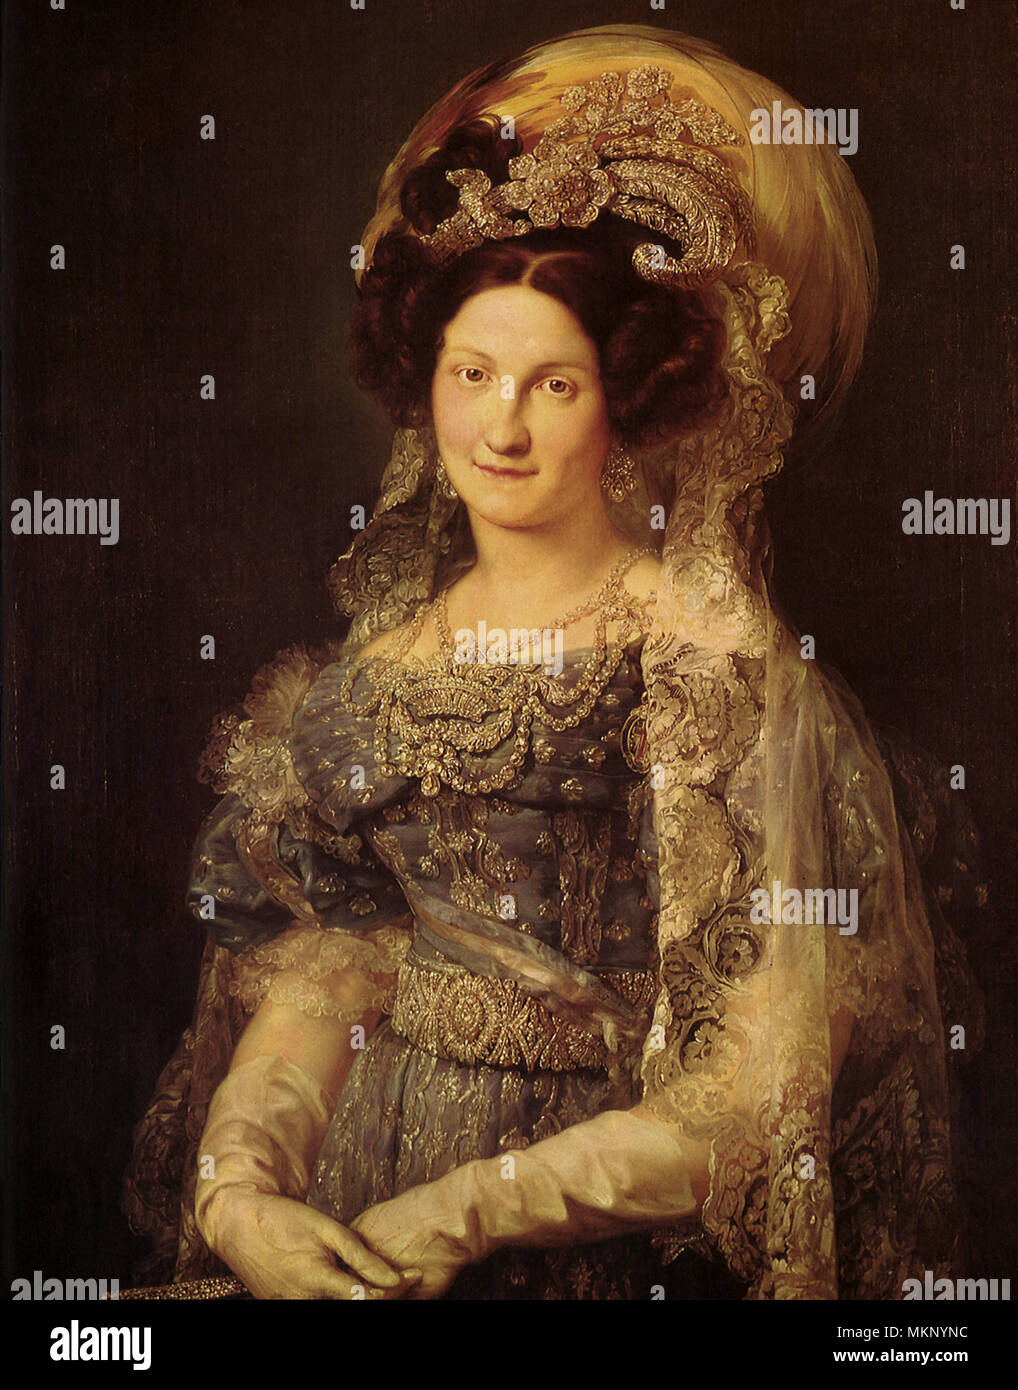 Ritratto della regina Maria-Christina 1830 Foto Stock